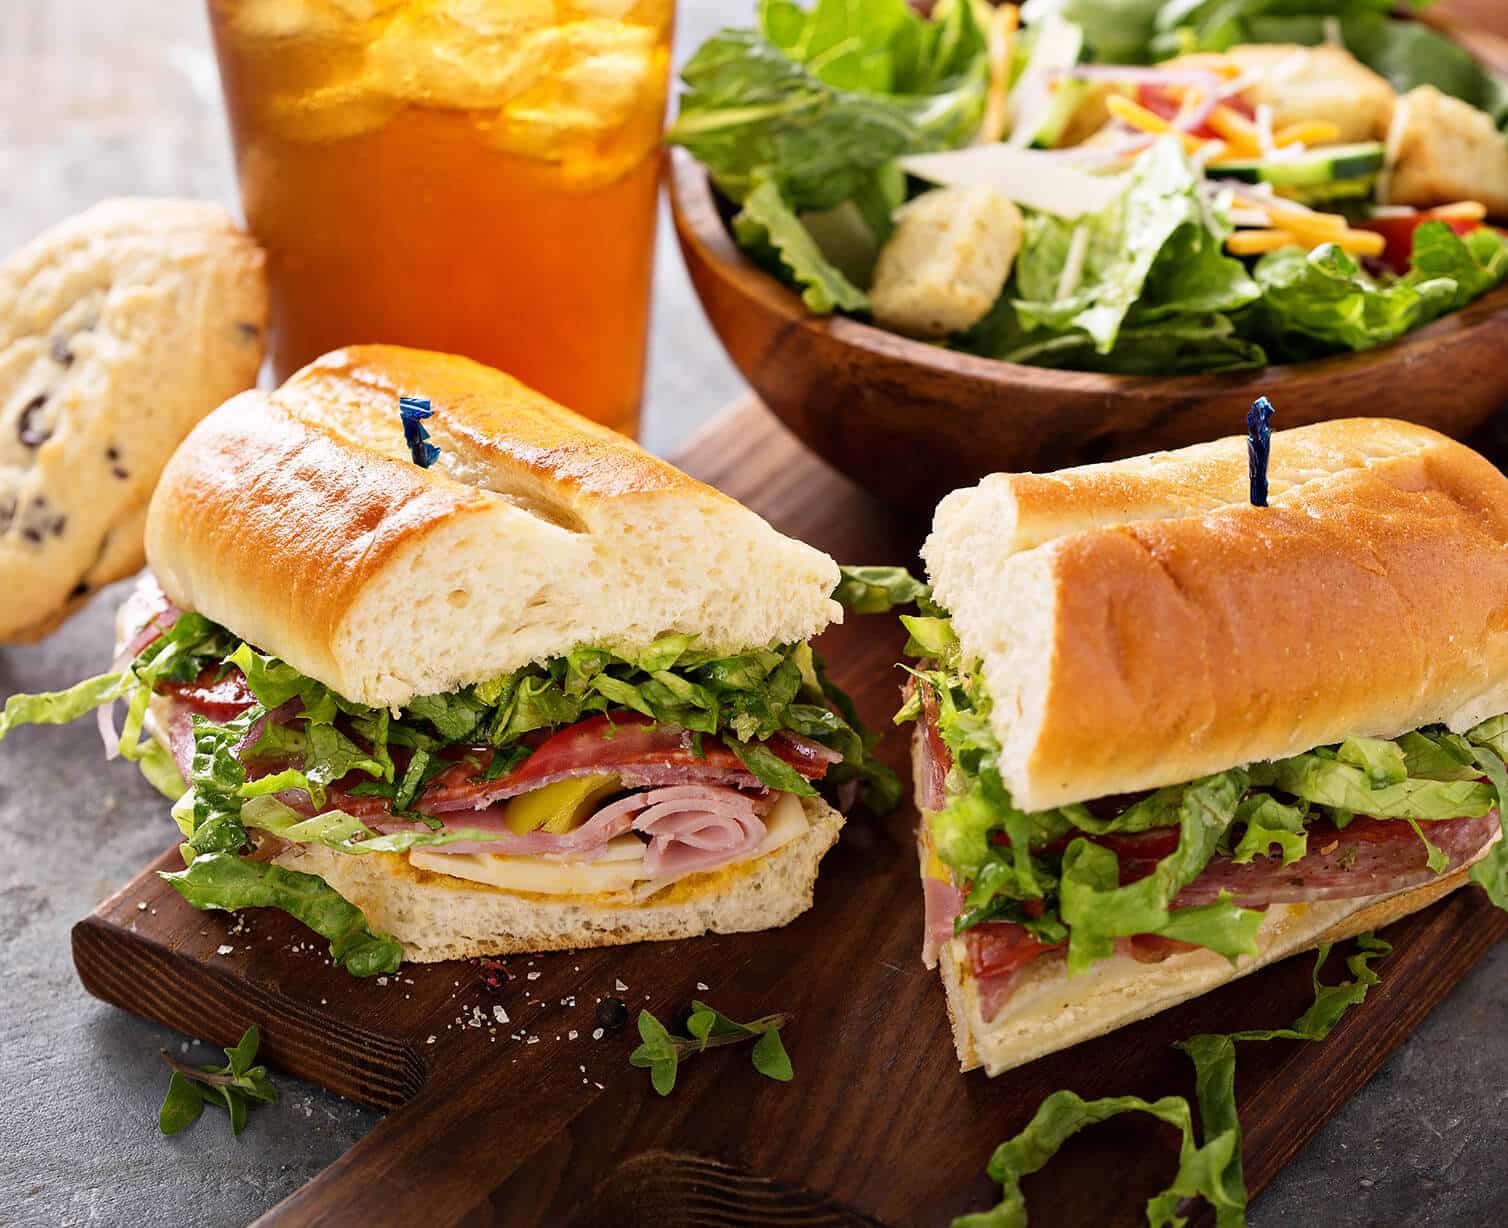 Deli sandwich and salad